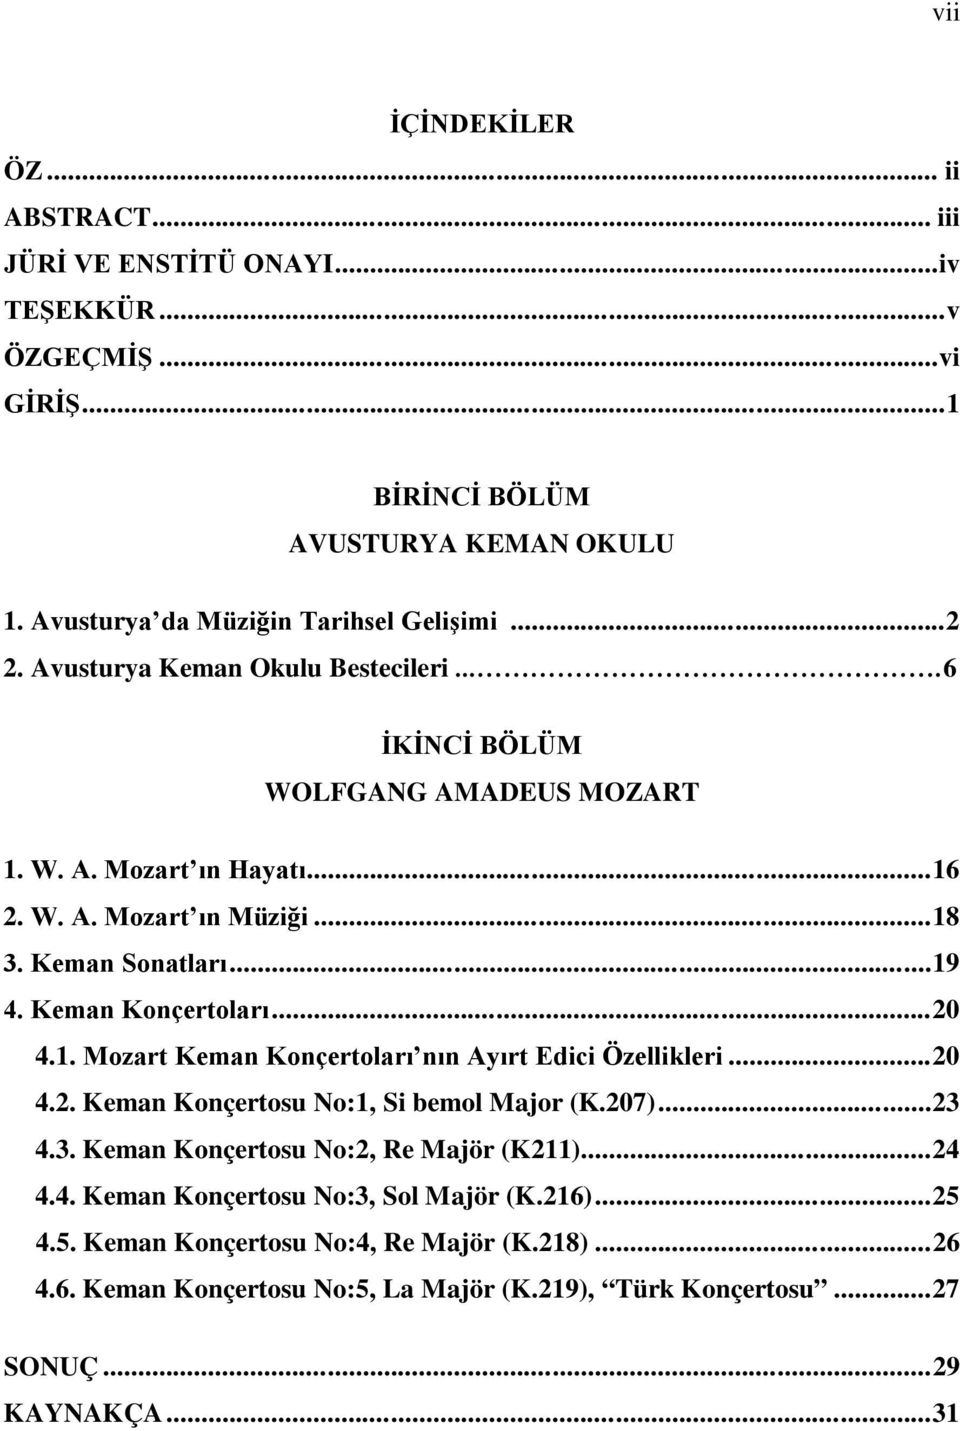 Keman Konçertoları...20 4.1. Mozart Keman Konçertoları nın Ayırt Edici Özellikleri...20 4.2. Keman Konçertosu No:1, Si bemol Major (K.207)...23 4.3. Keman Konçertosu No:2, Re Majör (K211).